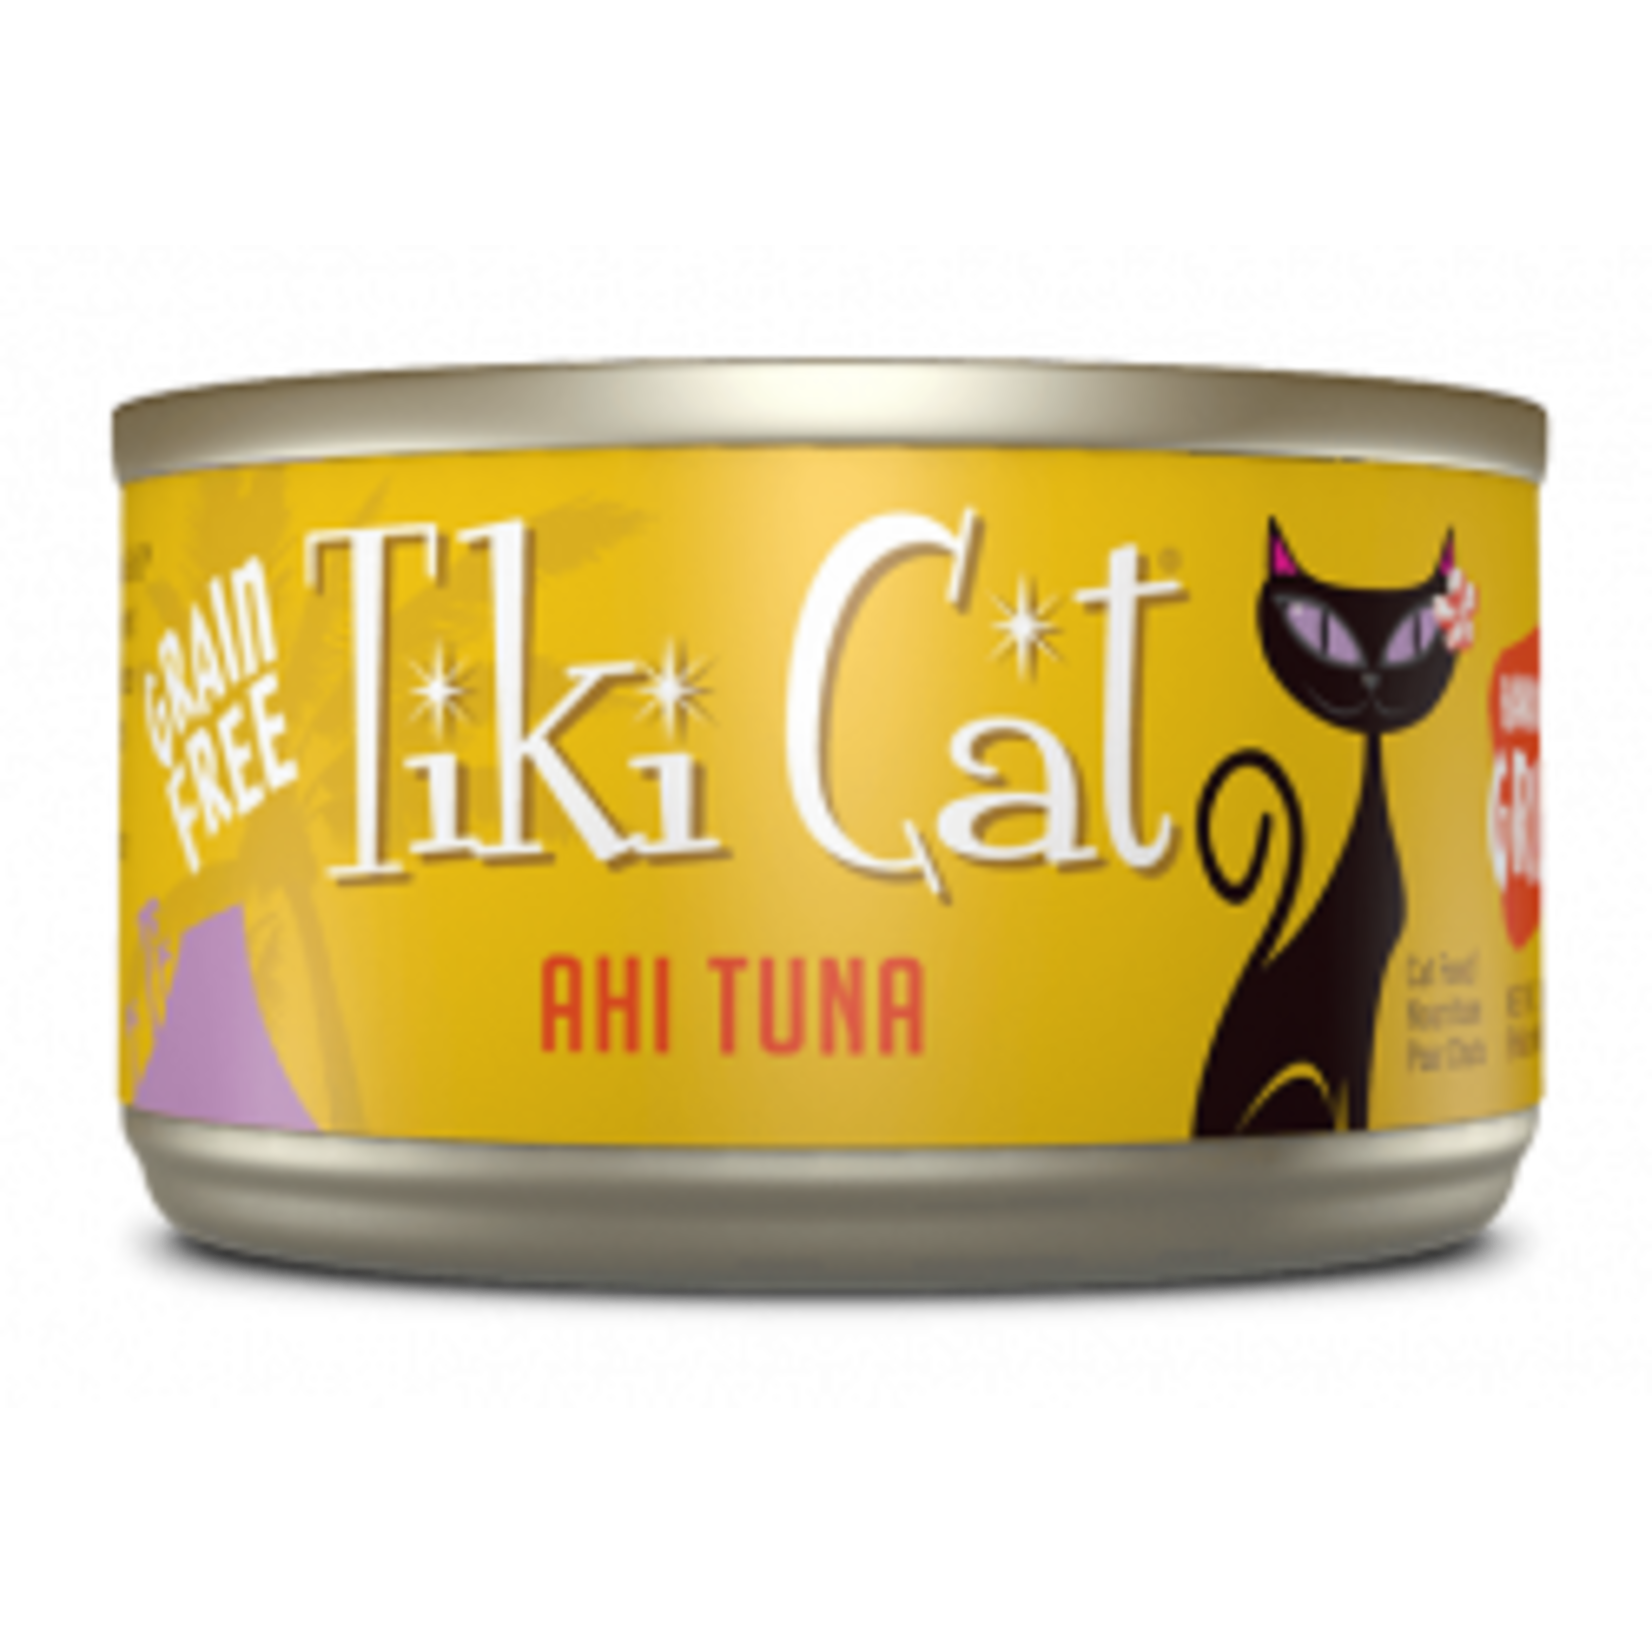 Tiki Cat & Tiki Dog Tiki Cat Grill Hawaiian Ahi Tuna Canned Cat Food 2.8oz